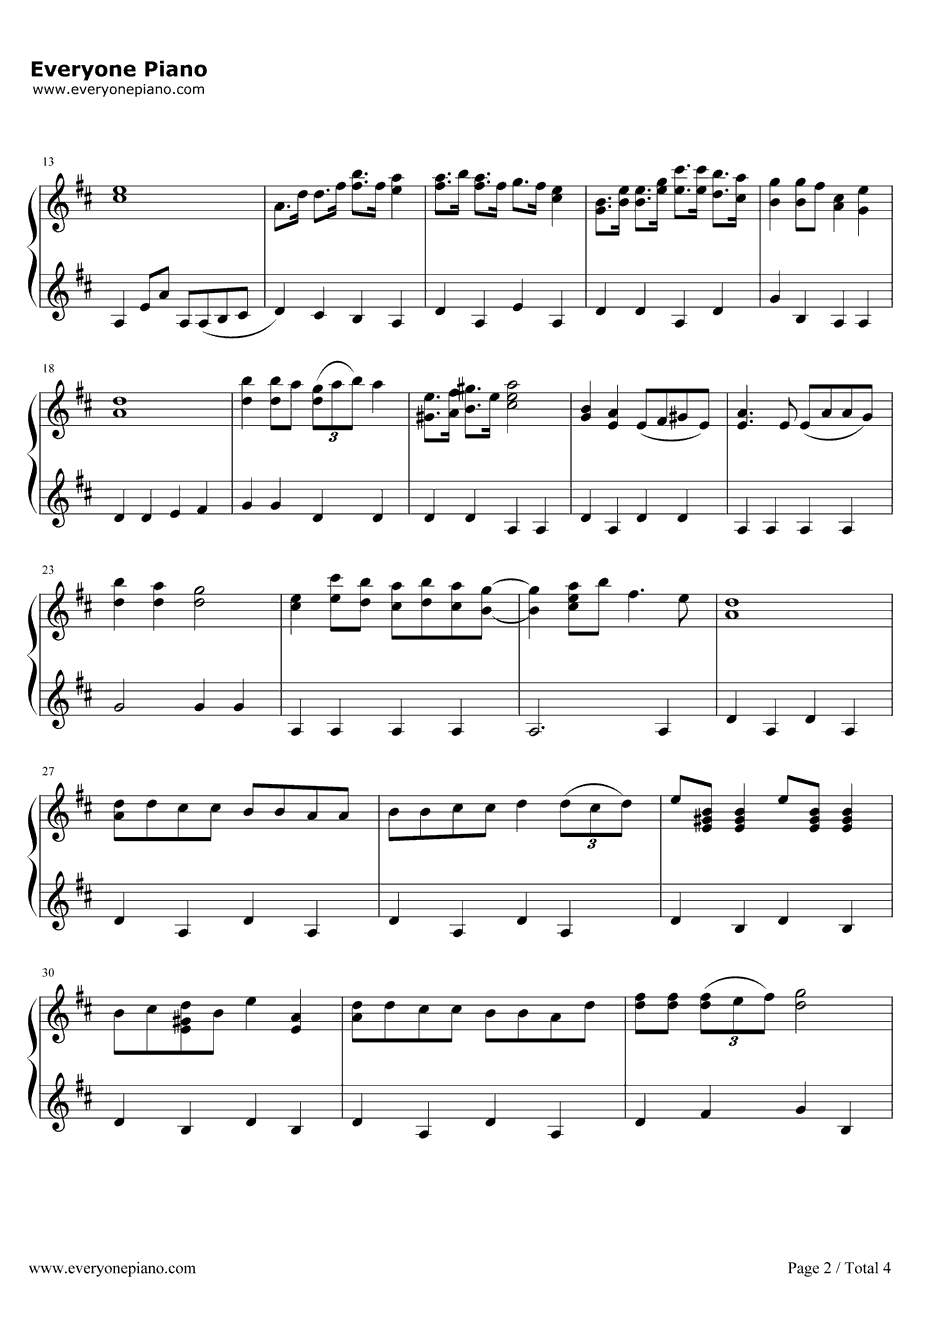 哆啦A梦主题曲钢琴谱-大杉久美子-哆啦A梦之歌2